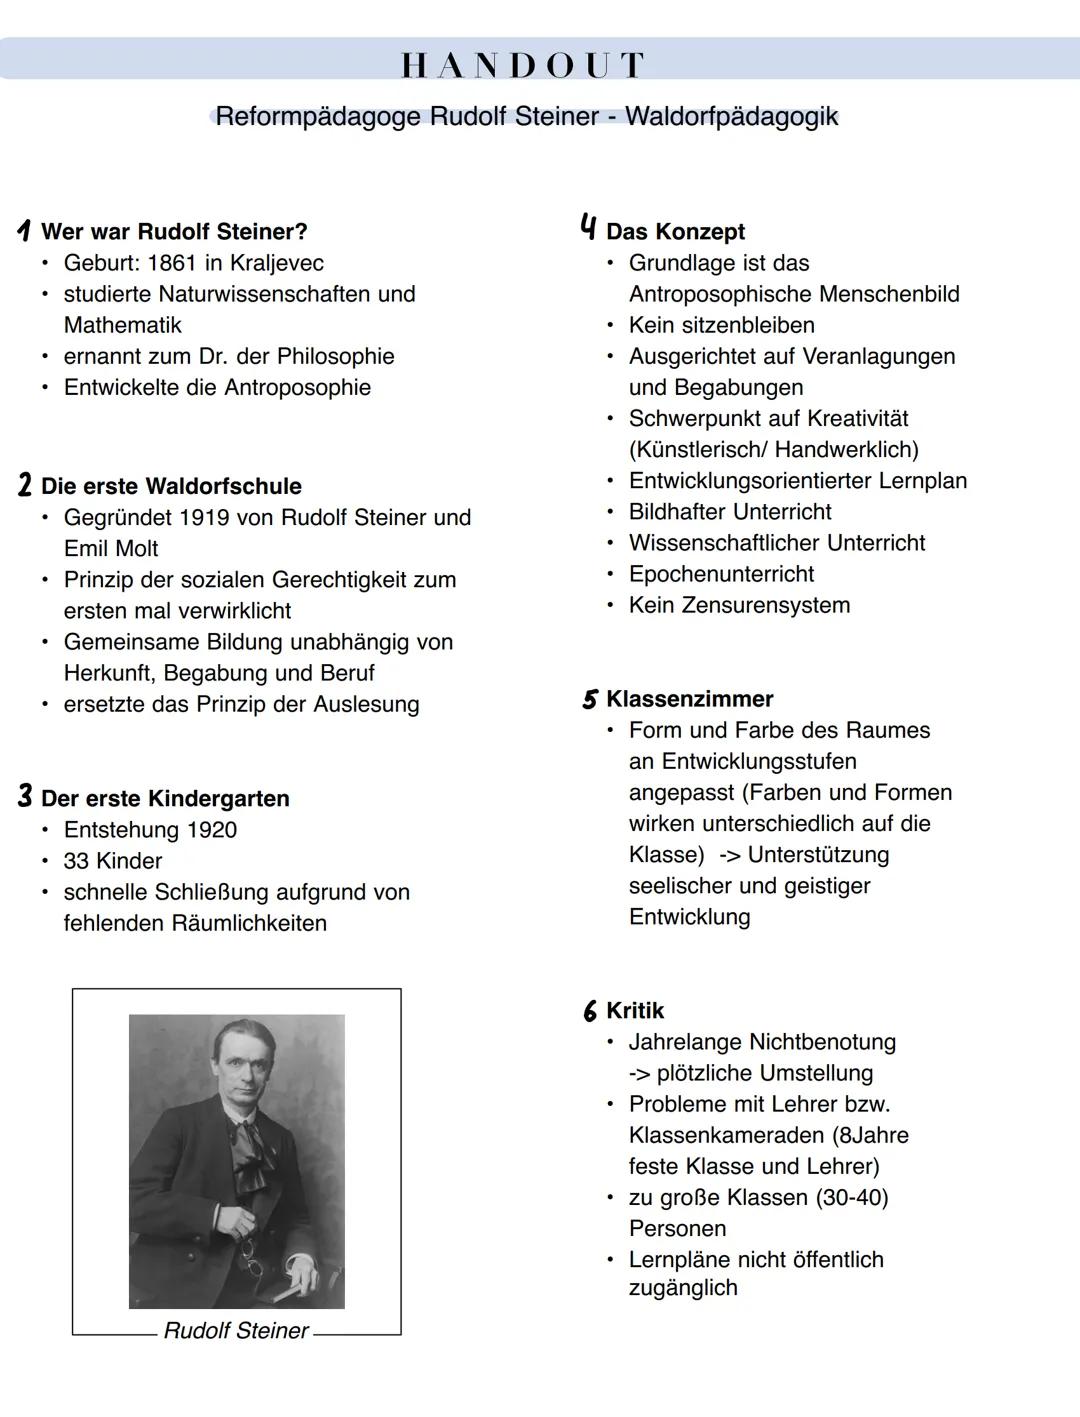 1 Wer war Rudolf Steiner?
Geburt: 1861 in Kraljevec
studierte Naturwissenschaften und
Mathematik
• ernannt zum Dr. der Philosophie
Entwickel